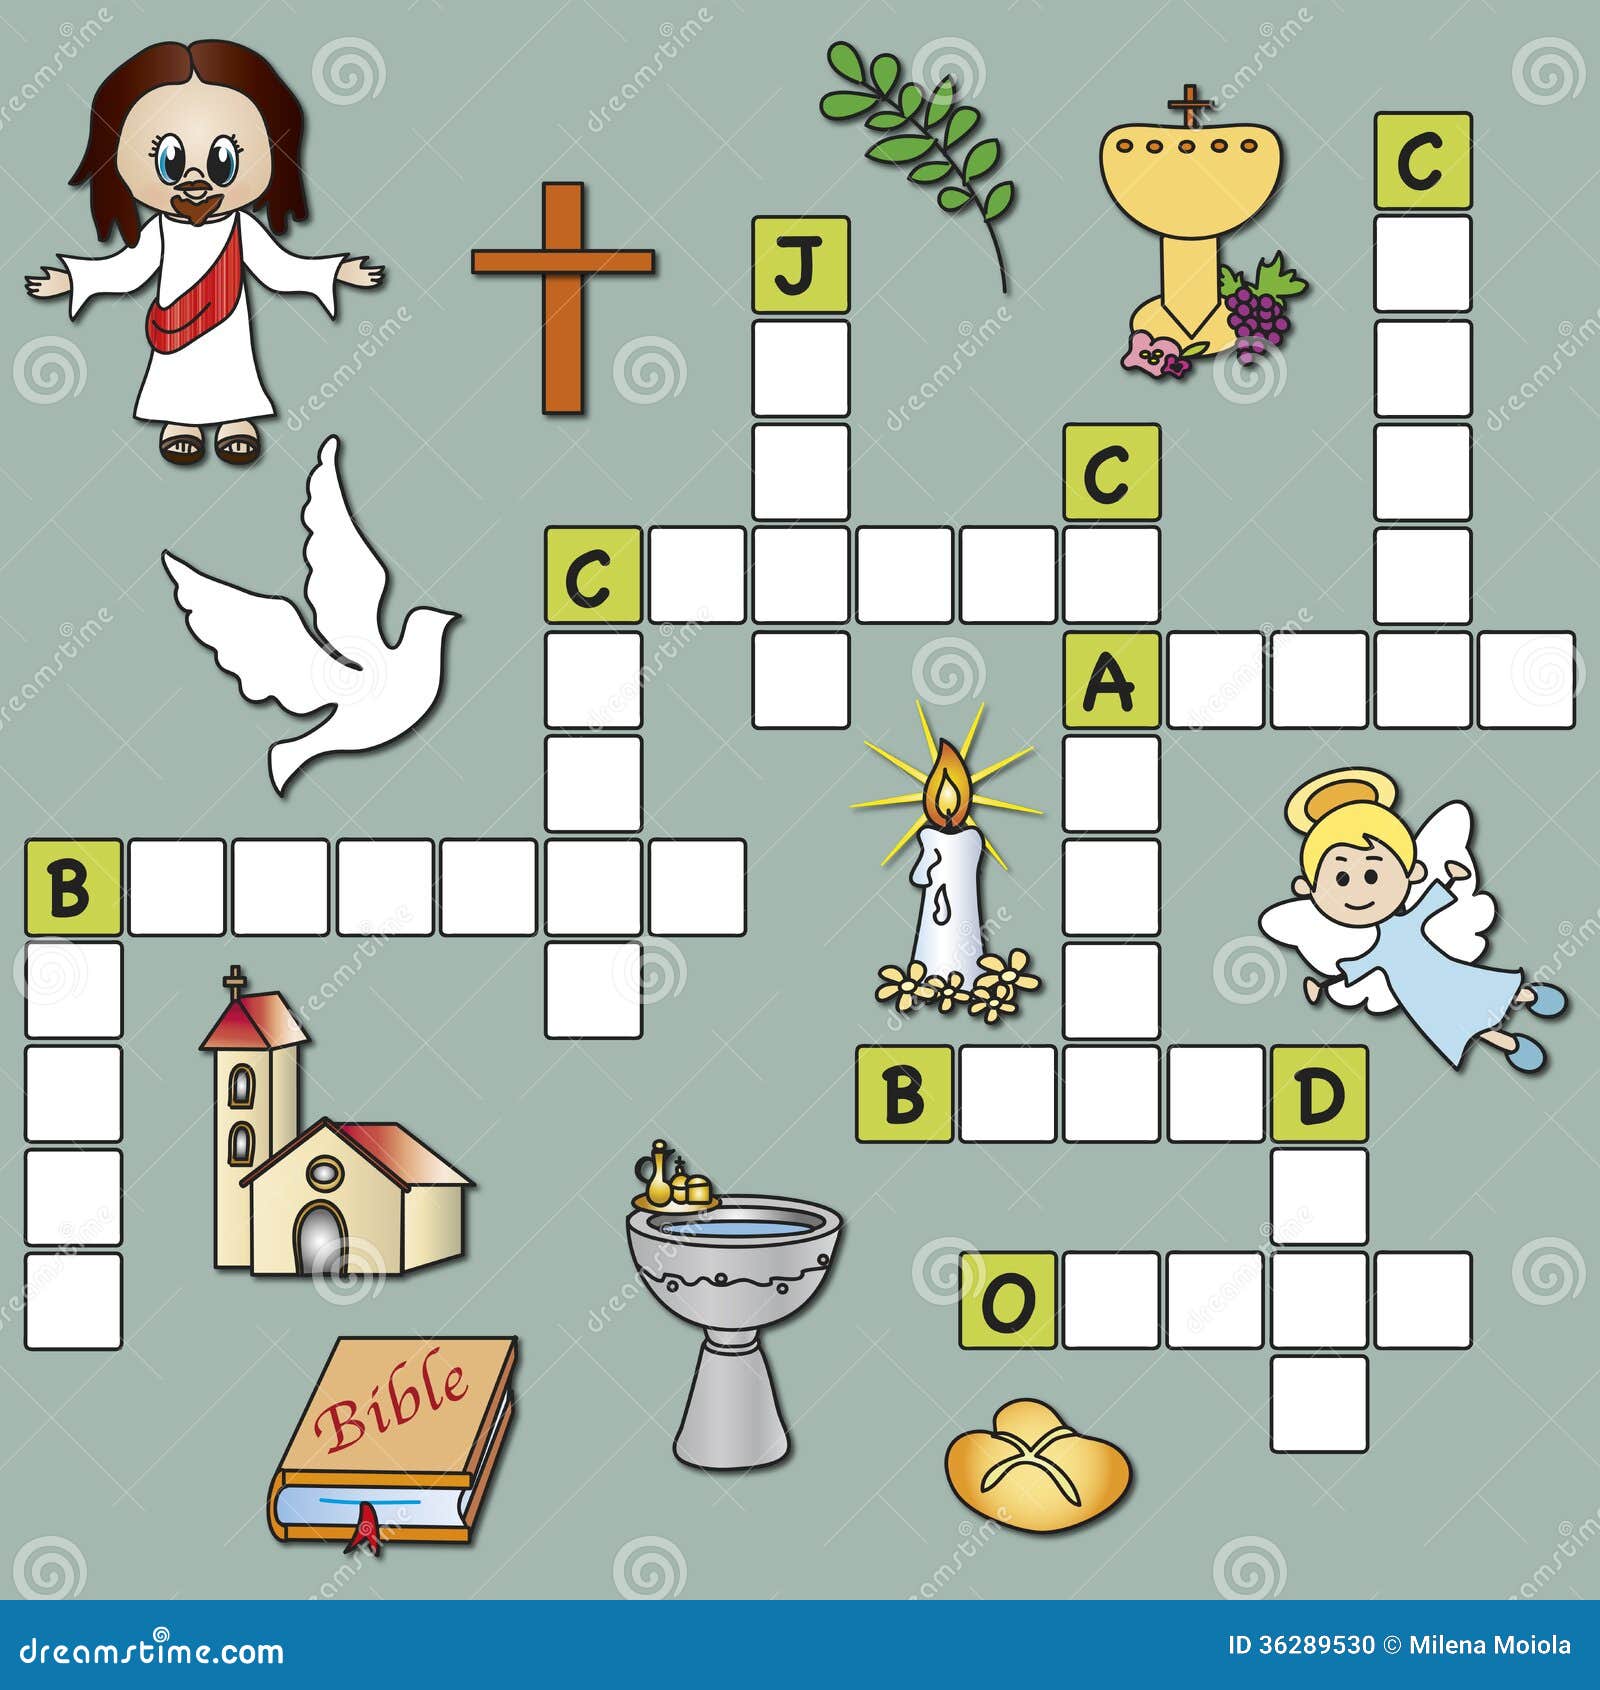 Crossword Religion Stock Photo Image 36289530